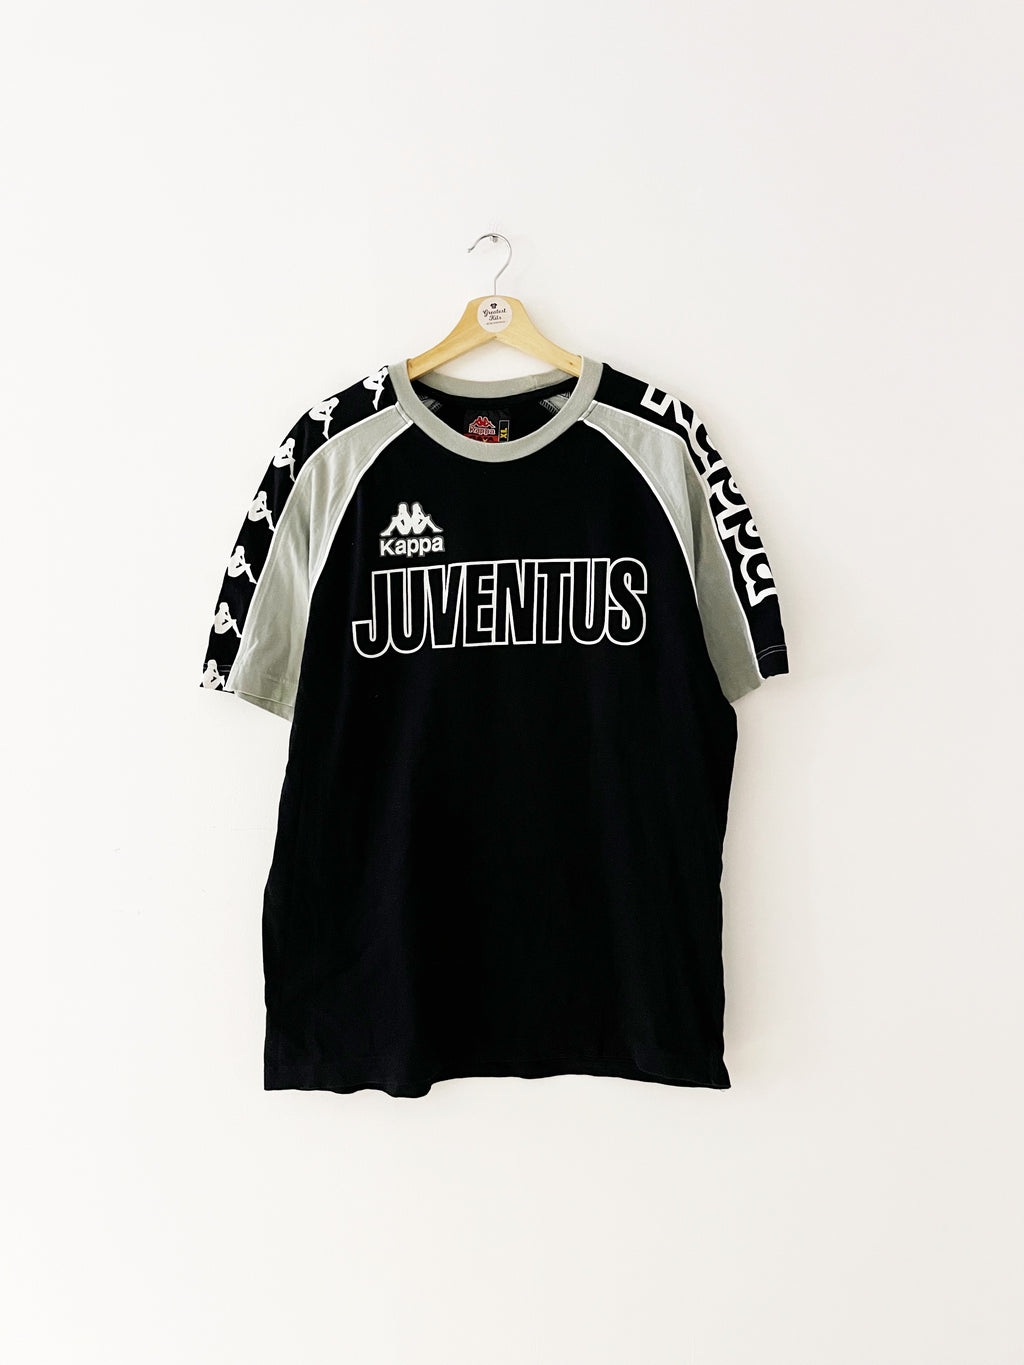 Maillot d'entraînement Juventus 1996/97 (XL) 9/10